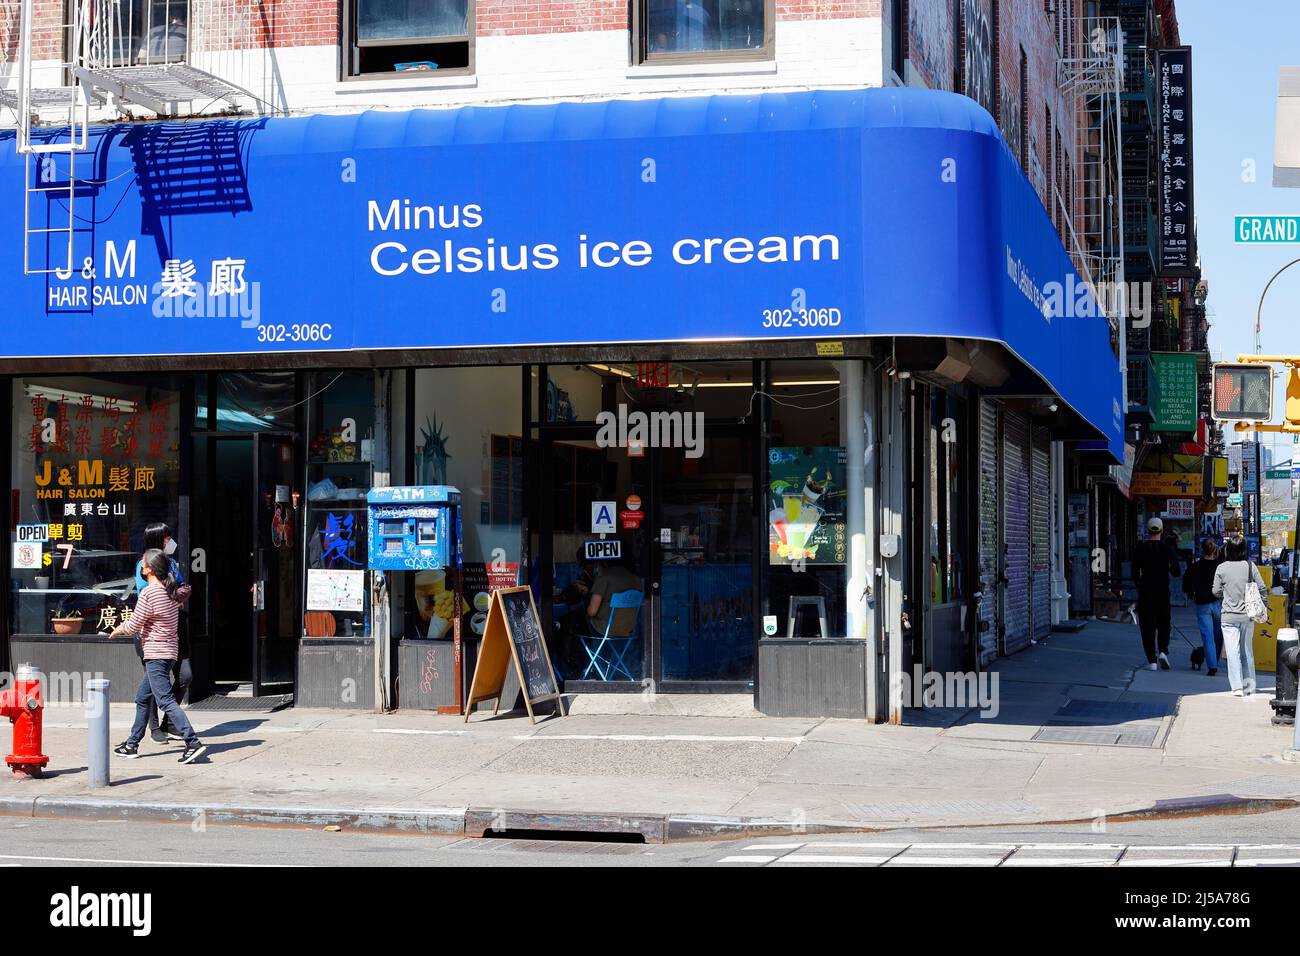 Minus Celsius Ice Cream, 302 Grand St, New York, NY. Außenfassade eines Eiswalzladens in der Lower East Side, Chinatown. Stockfoto